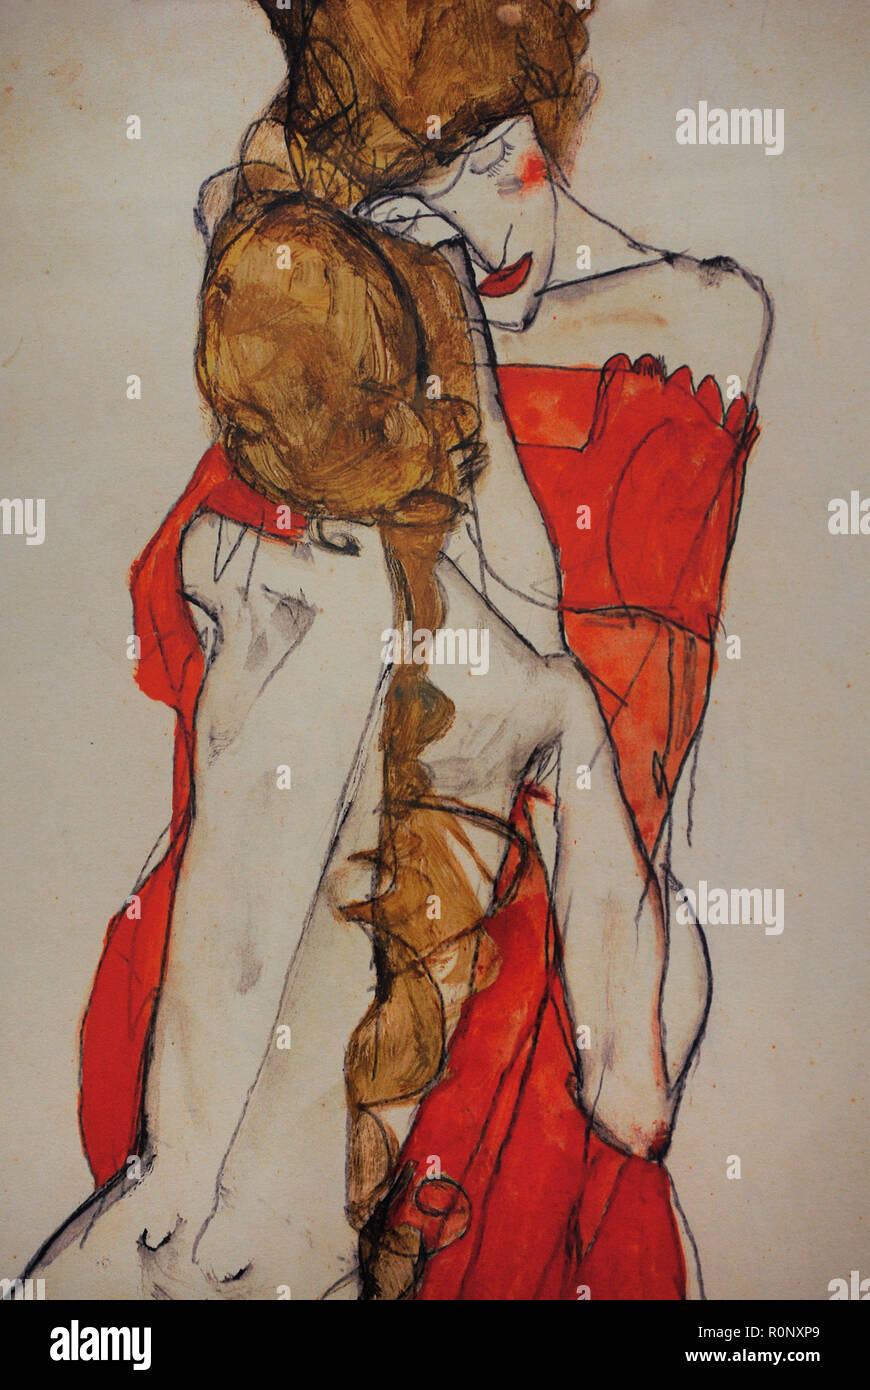 Egon Schiele (Tulln, 1890-Vienne, 1918). Peintre expressionniste autrichien. Mère et fille, 1913. Crayon et gouache sur papier. Musée Leopold. Vienne, Autriche. Banque D'Images